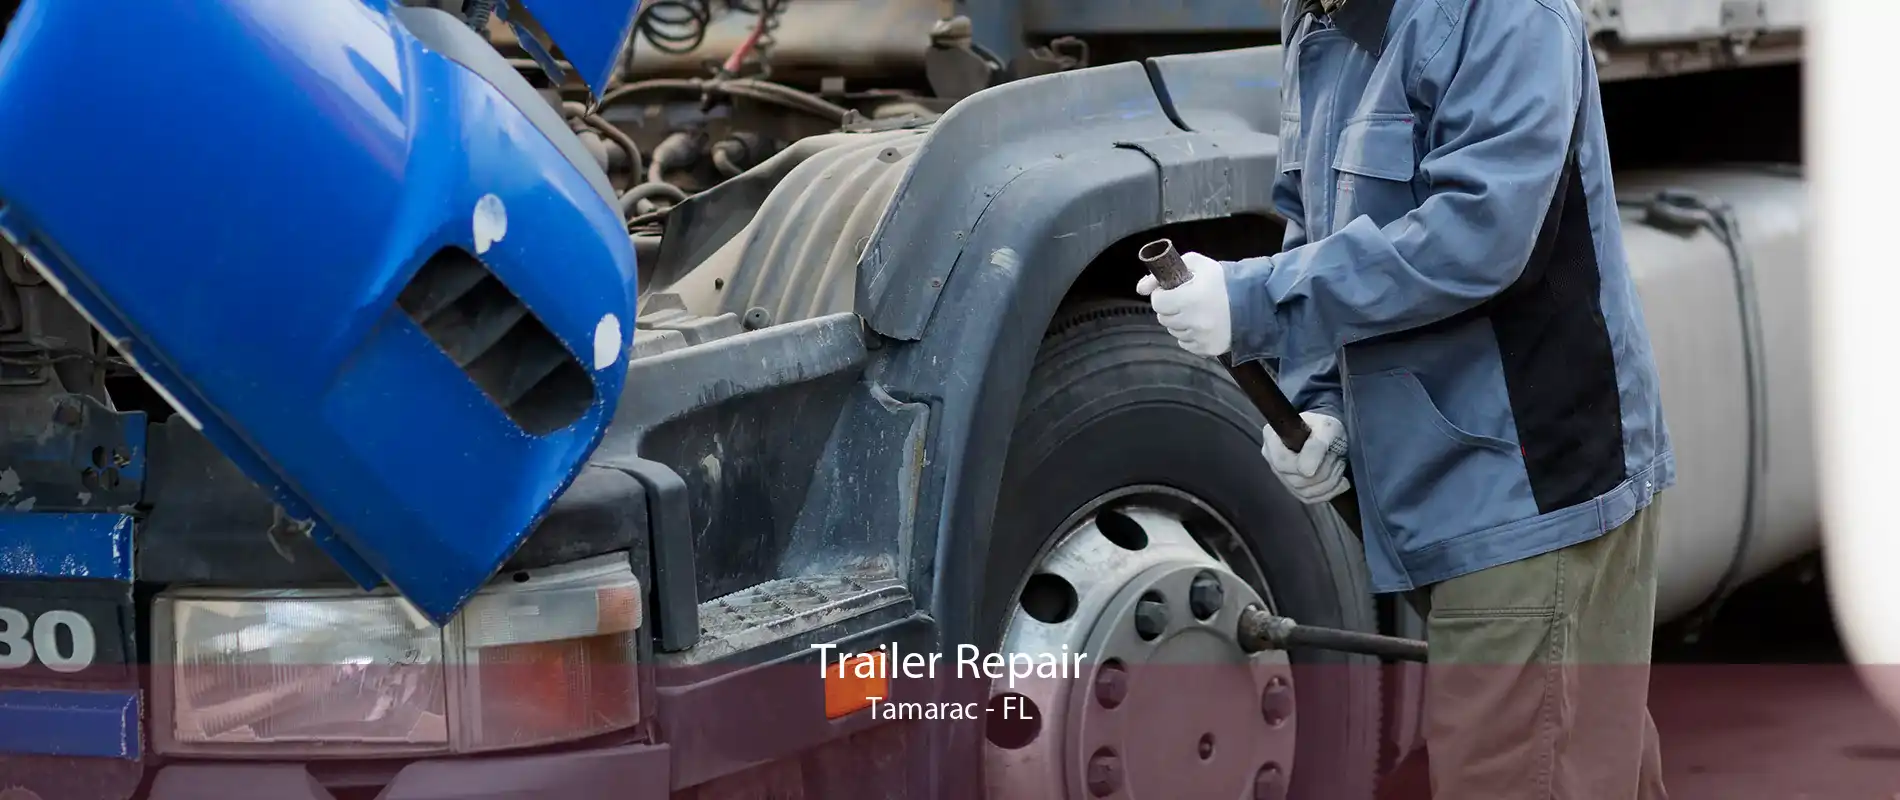 Trailer Repair Tamarac - FL